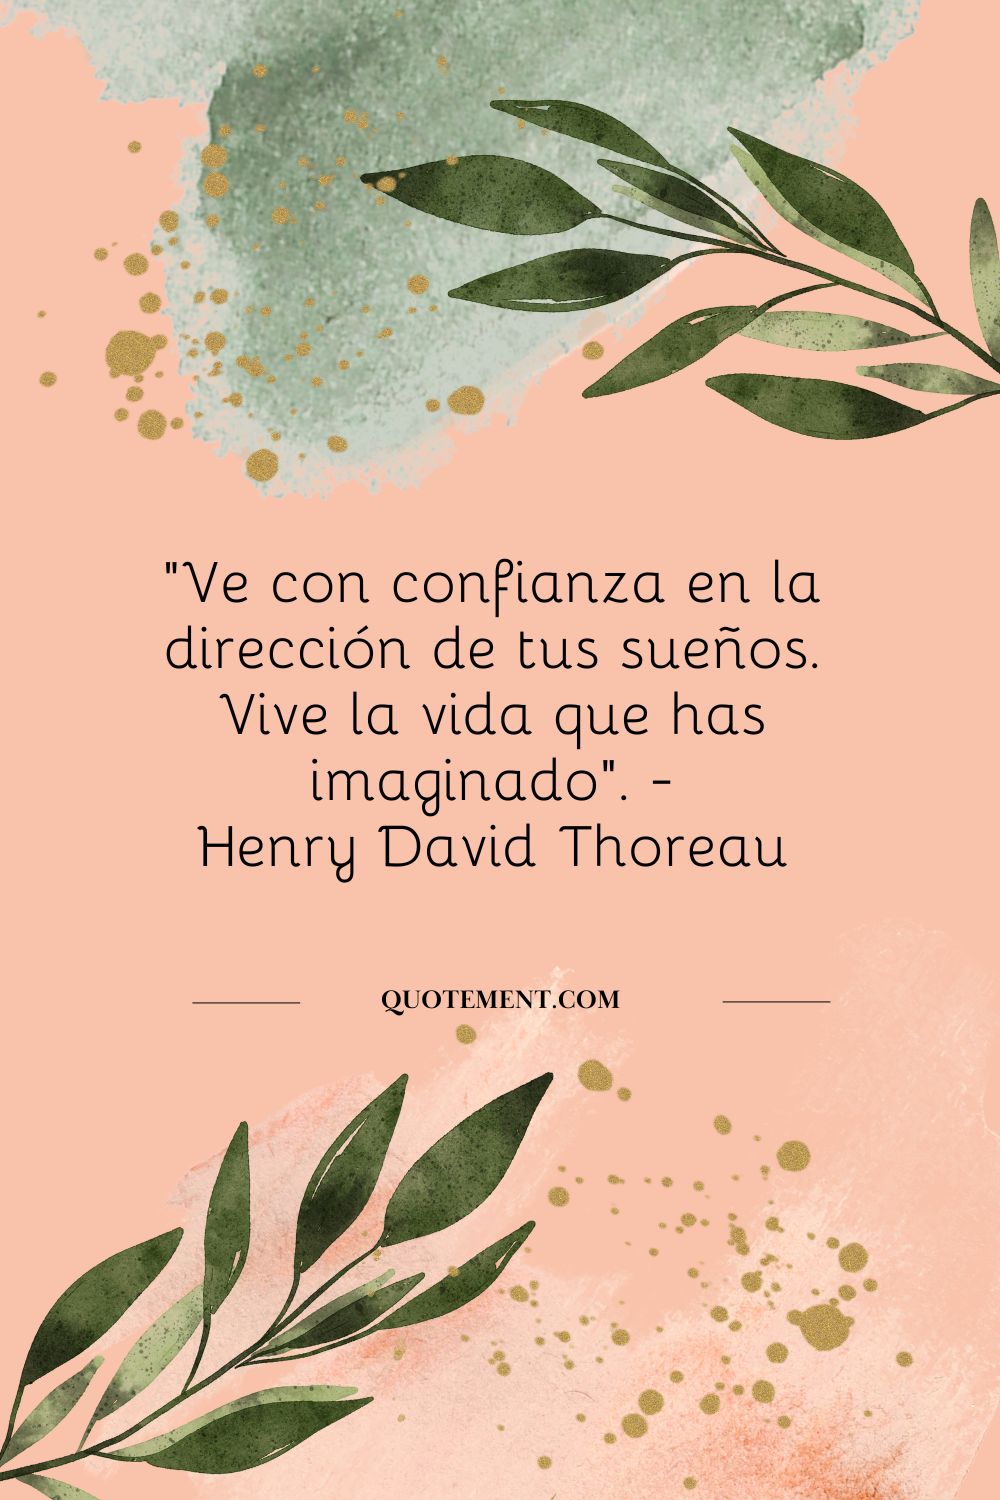 "Ve con confianza en la dirección de tus sueños. Vive la vida que has imaginado". - Henry David Thoreau